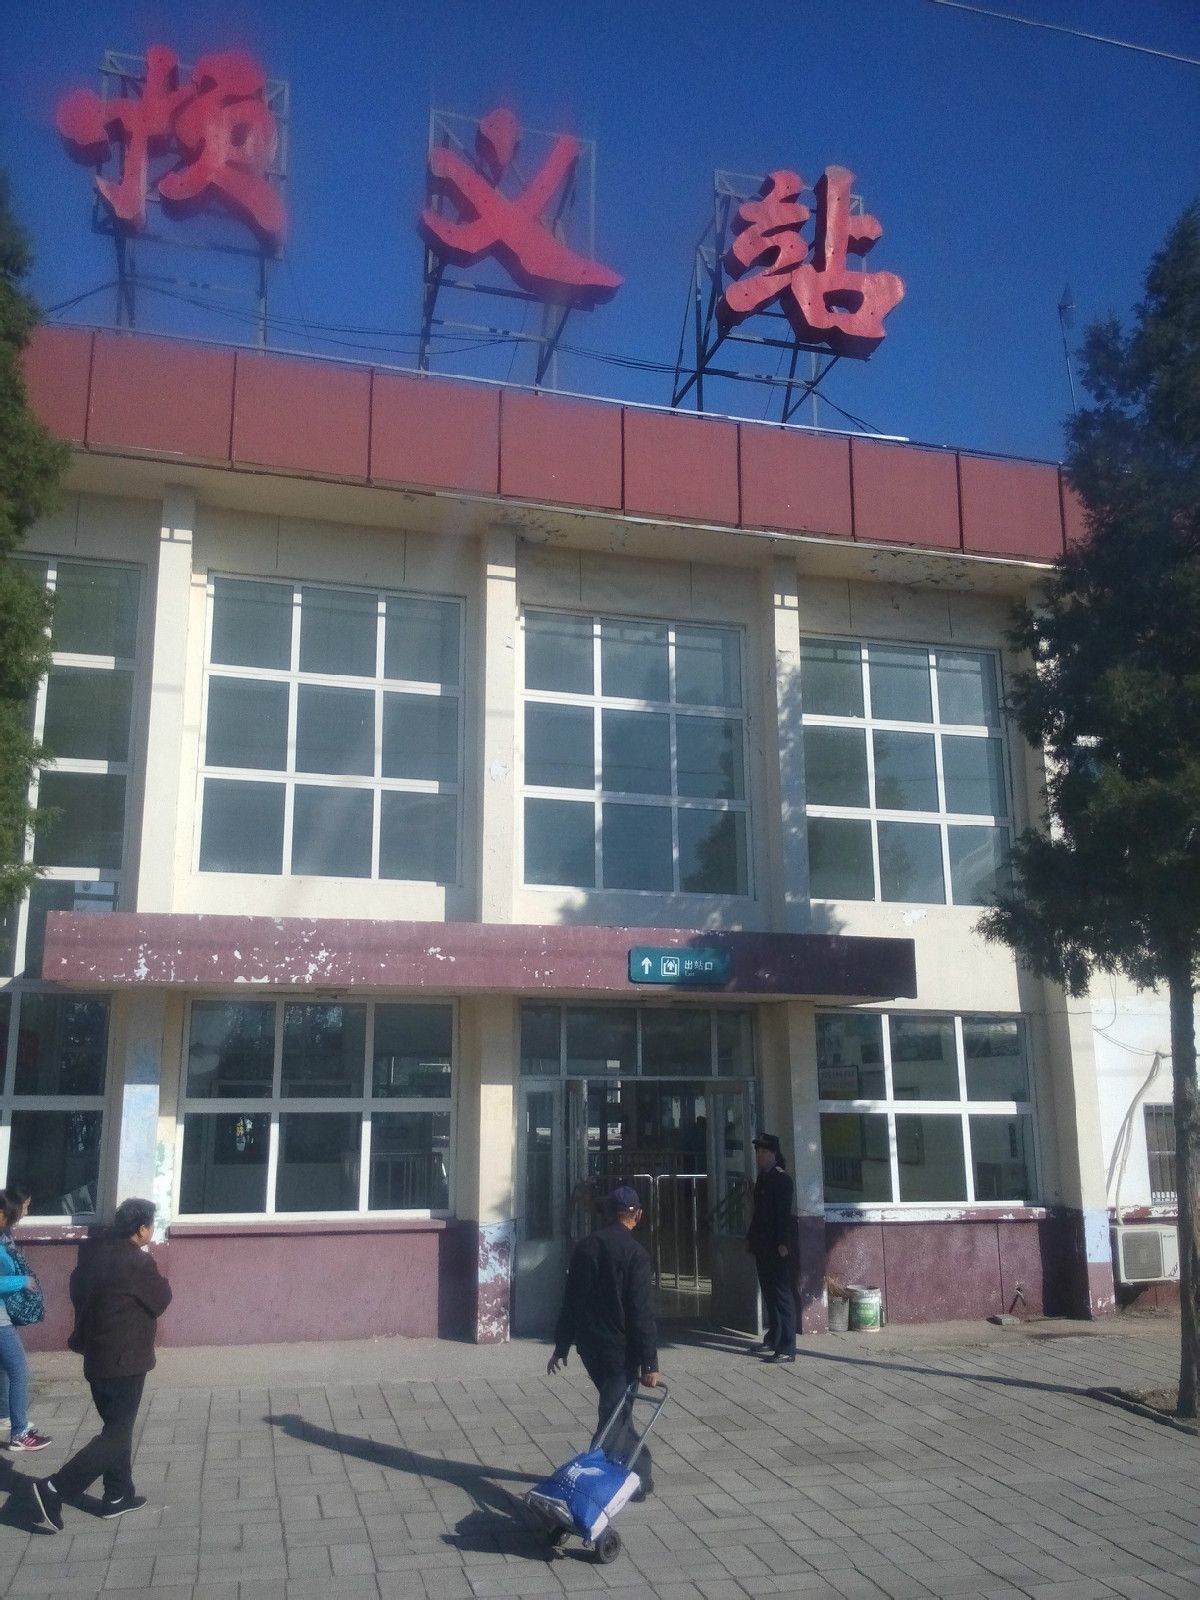 順義站(北京鐵路局管轄三等站)